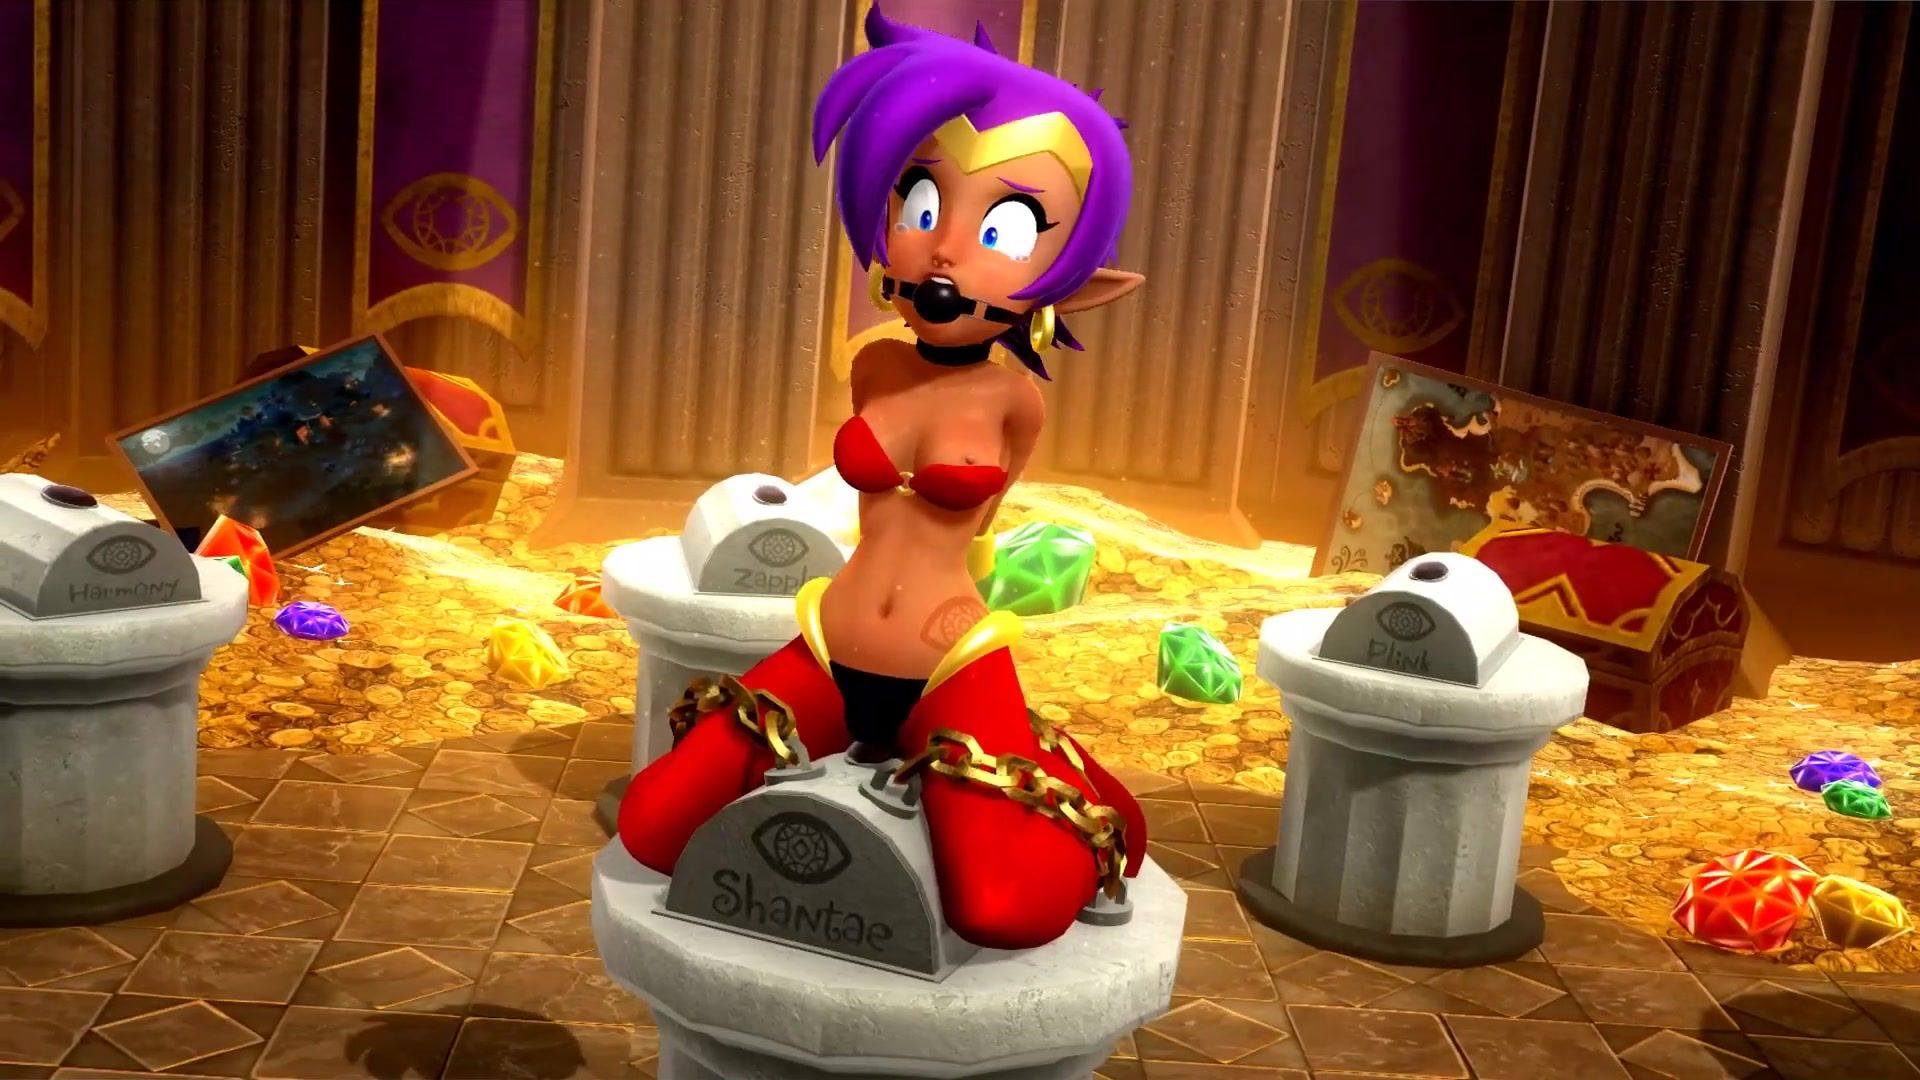 Shantae bondage